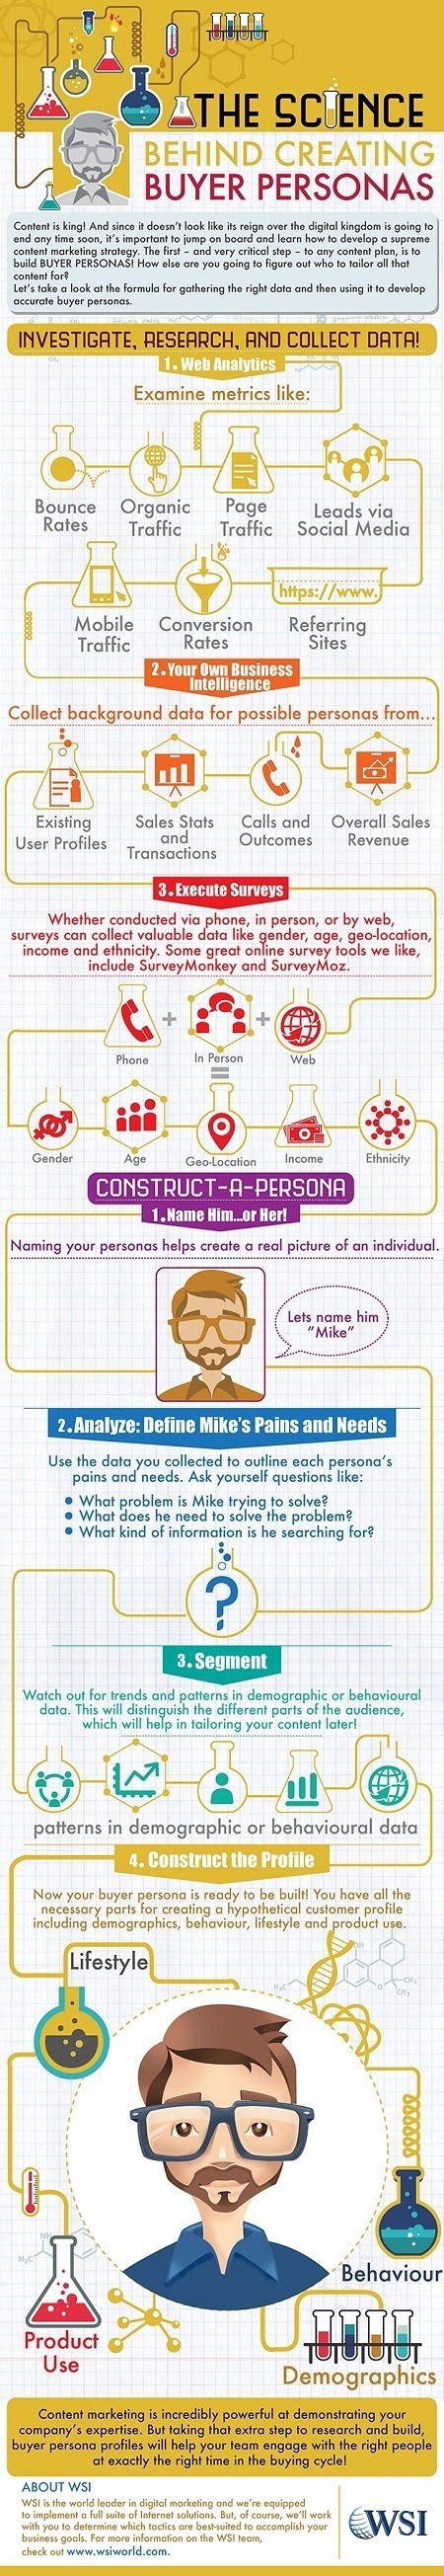 How to Create Buyer Personas #Infographic | Online tips & social media nieuws | Scoop.it